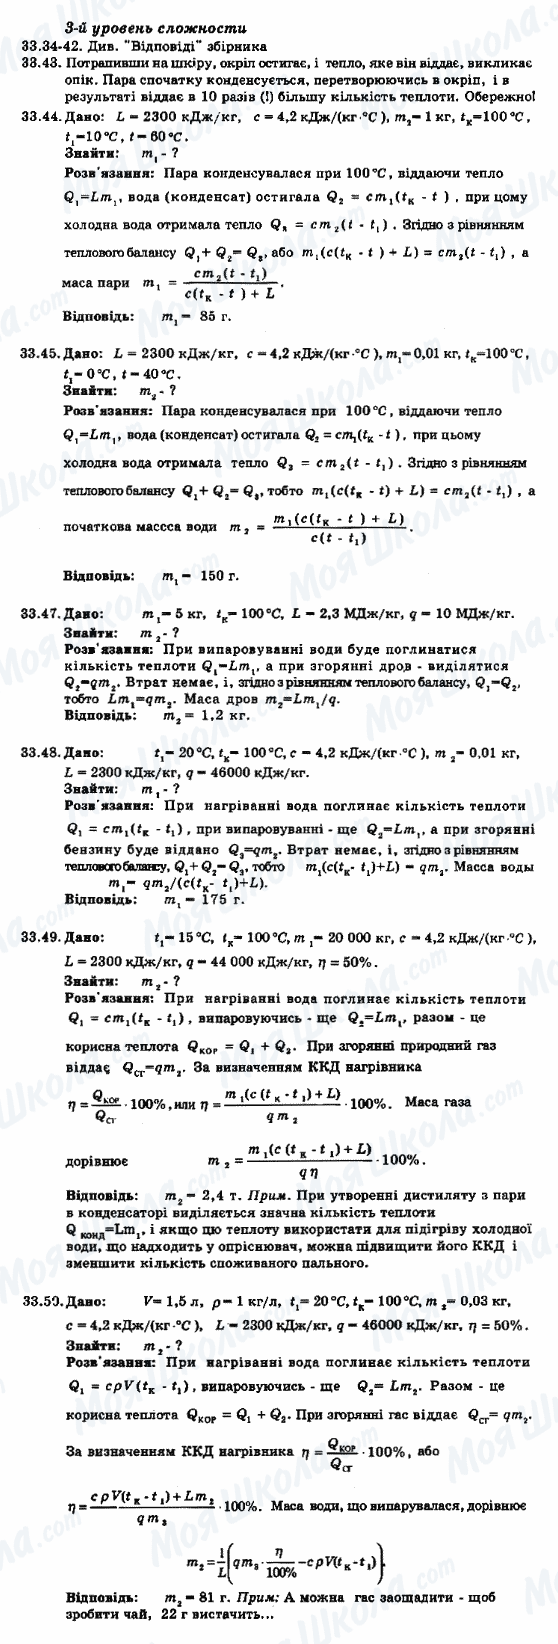 ГДЗ Физика 8 класс страница 33.34-33.50